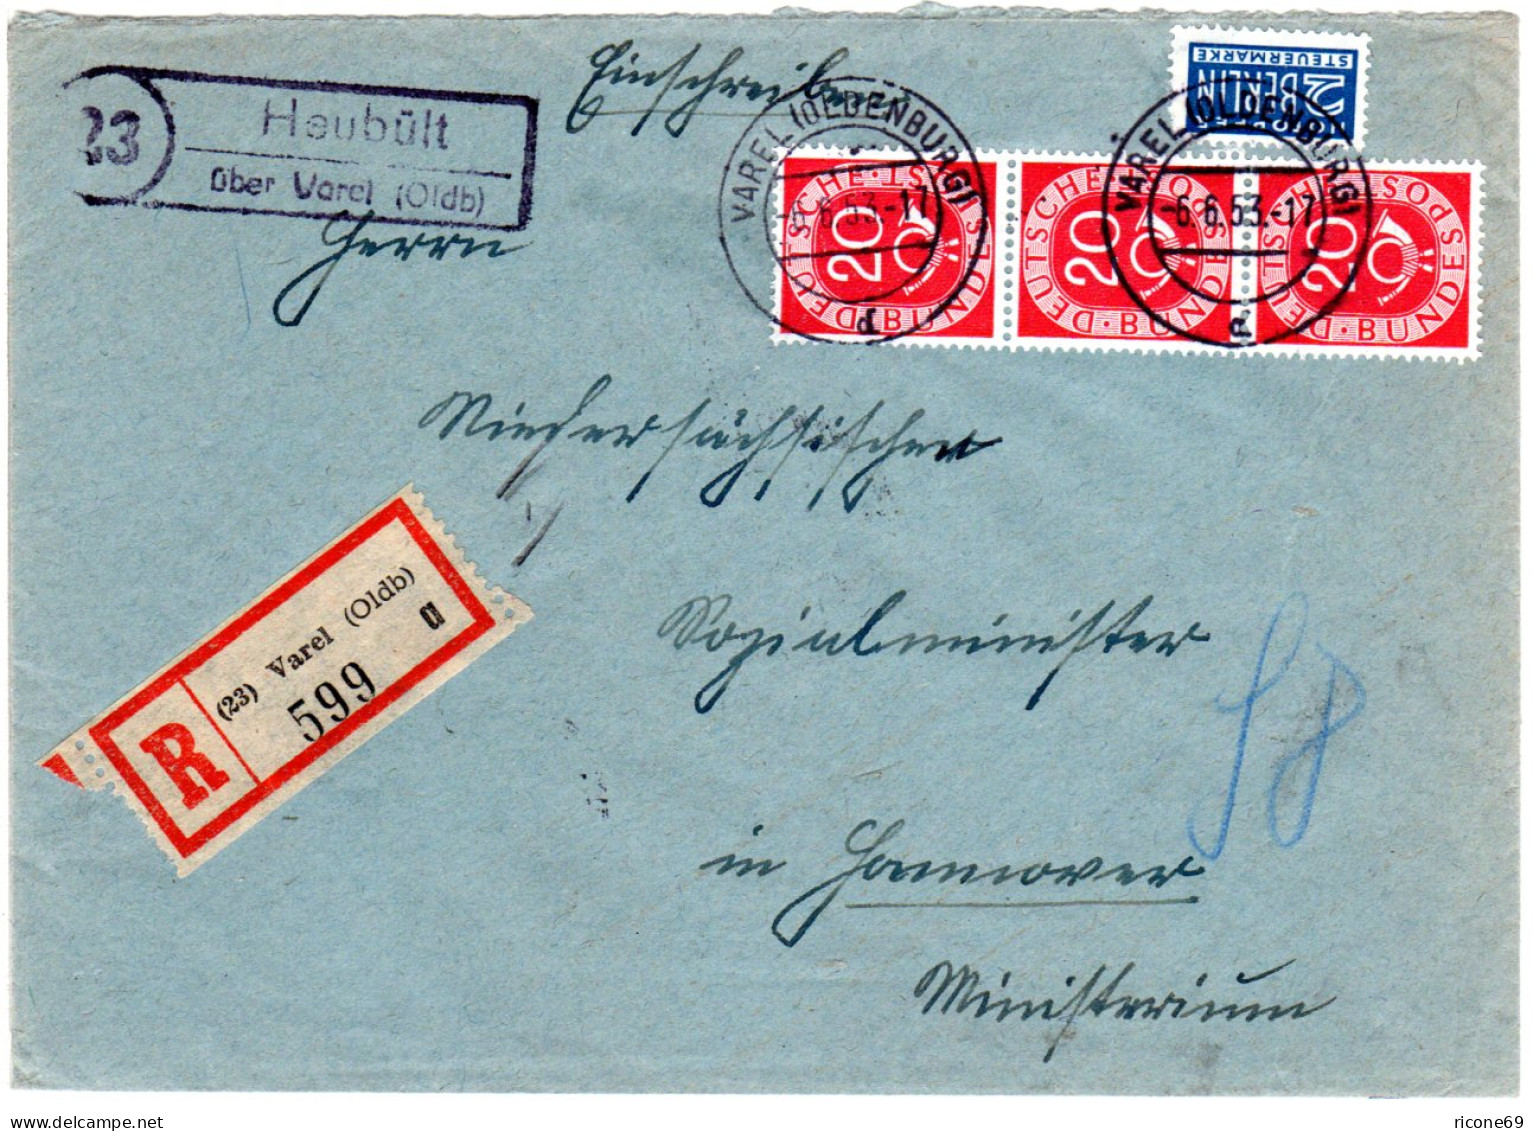 BRD 1953, Landpost Stpl. 23 HEUBÜLT über Varel Auf Einschreiben Brief M. 3x20 Pf - Covers & Documents